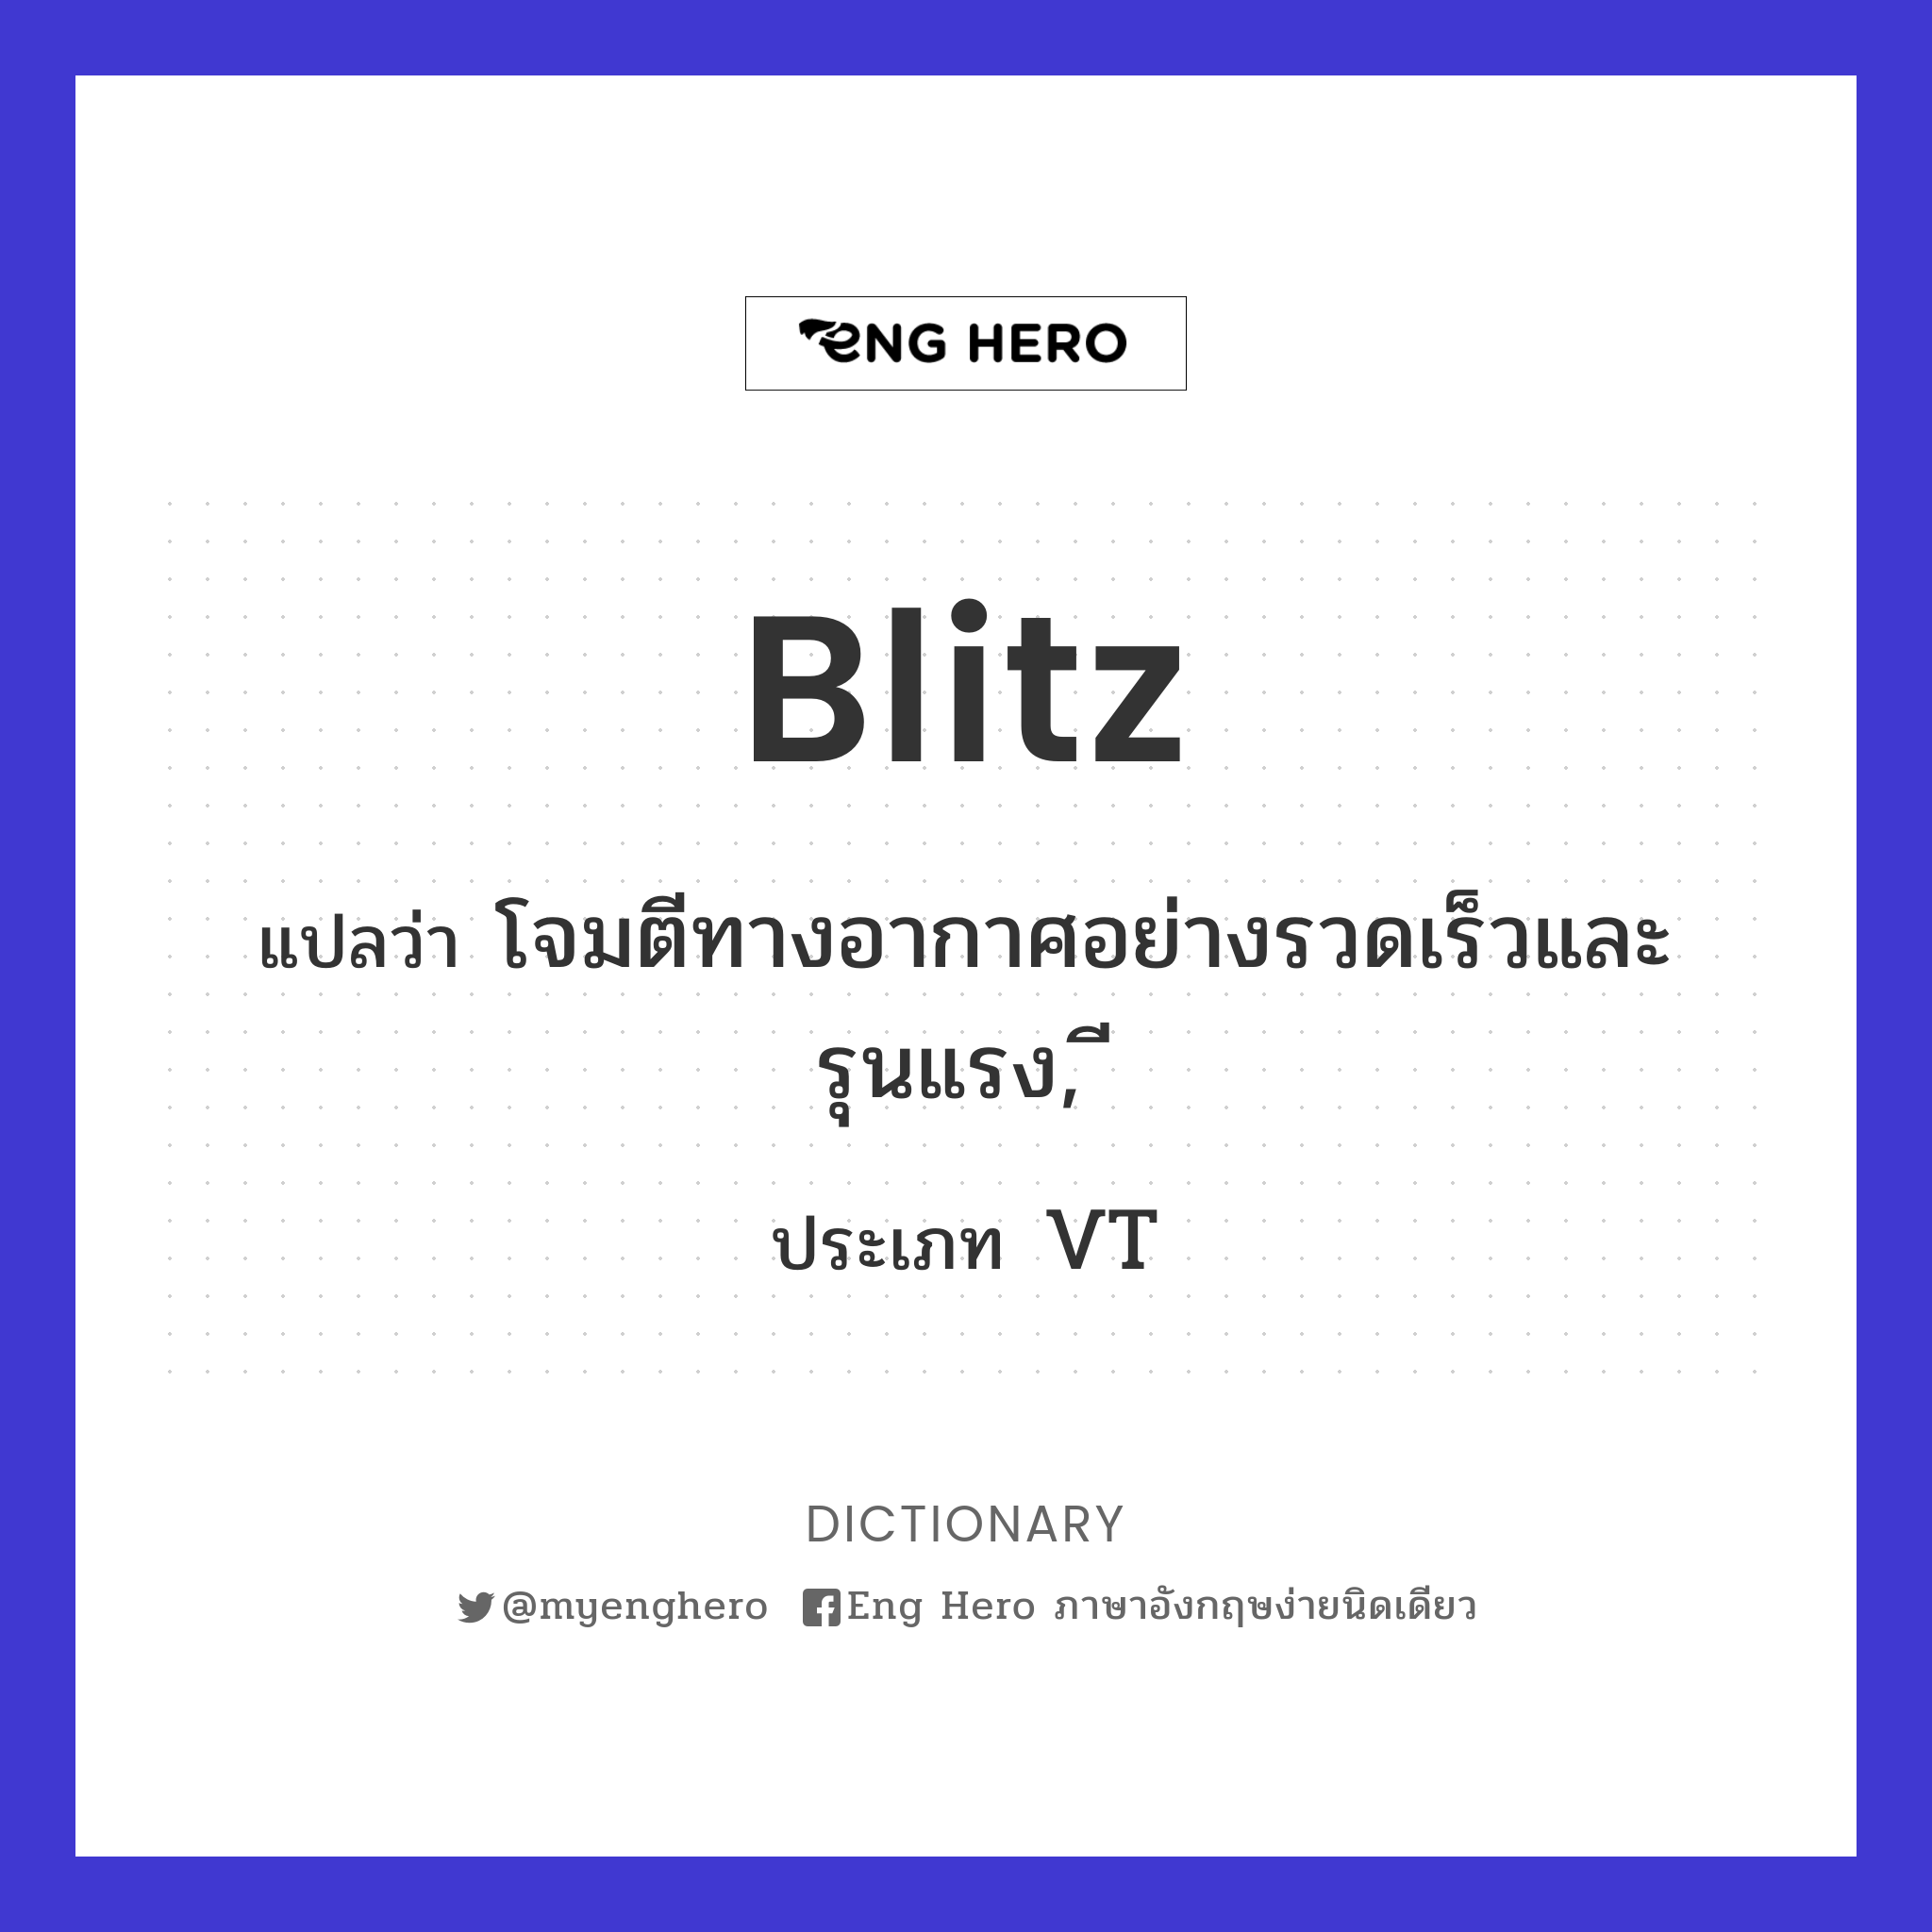 blitz